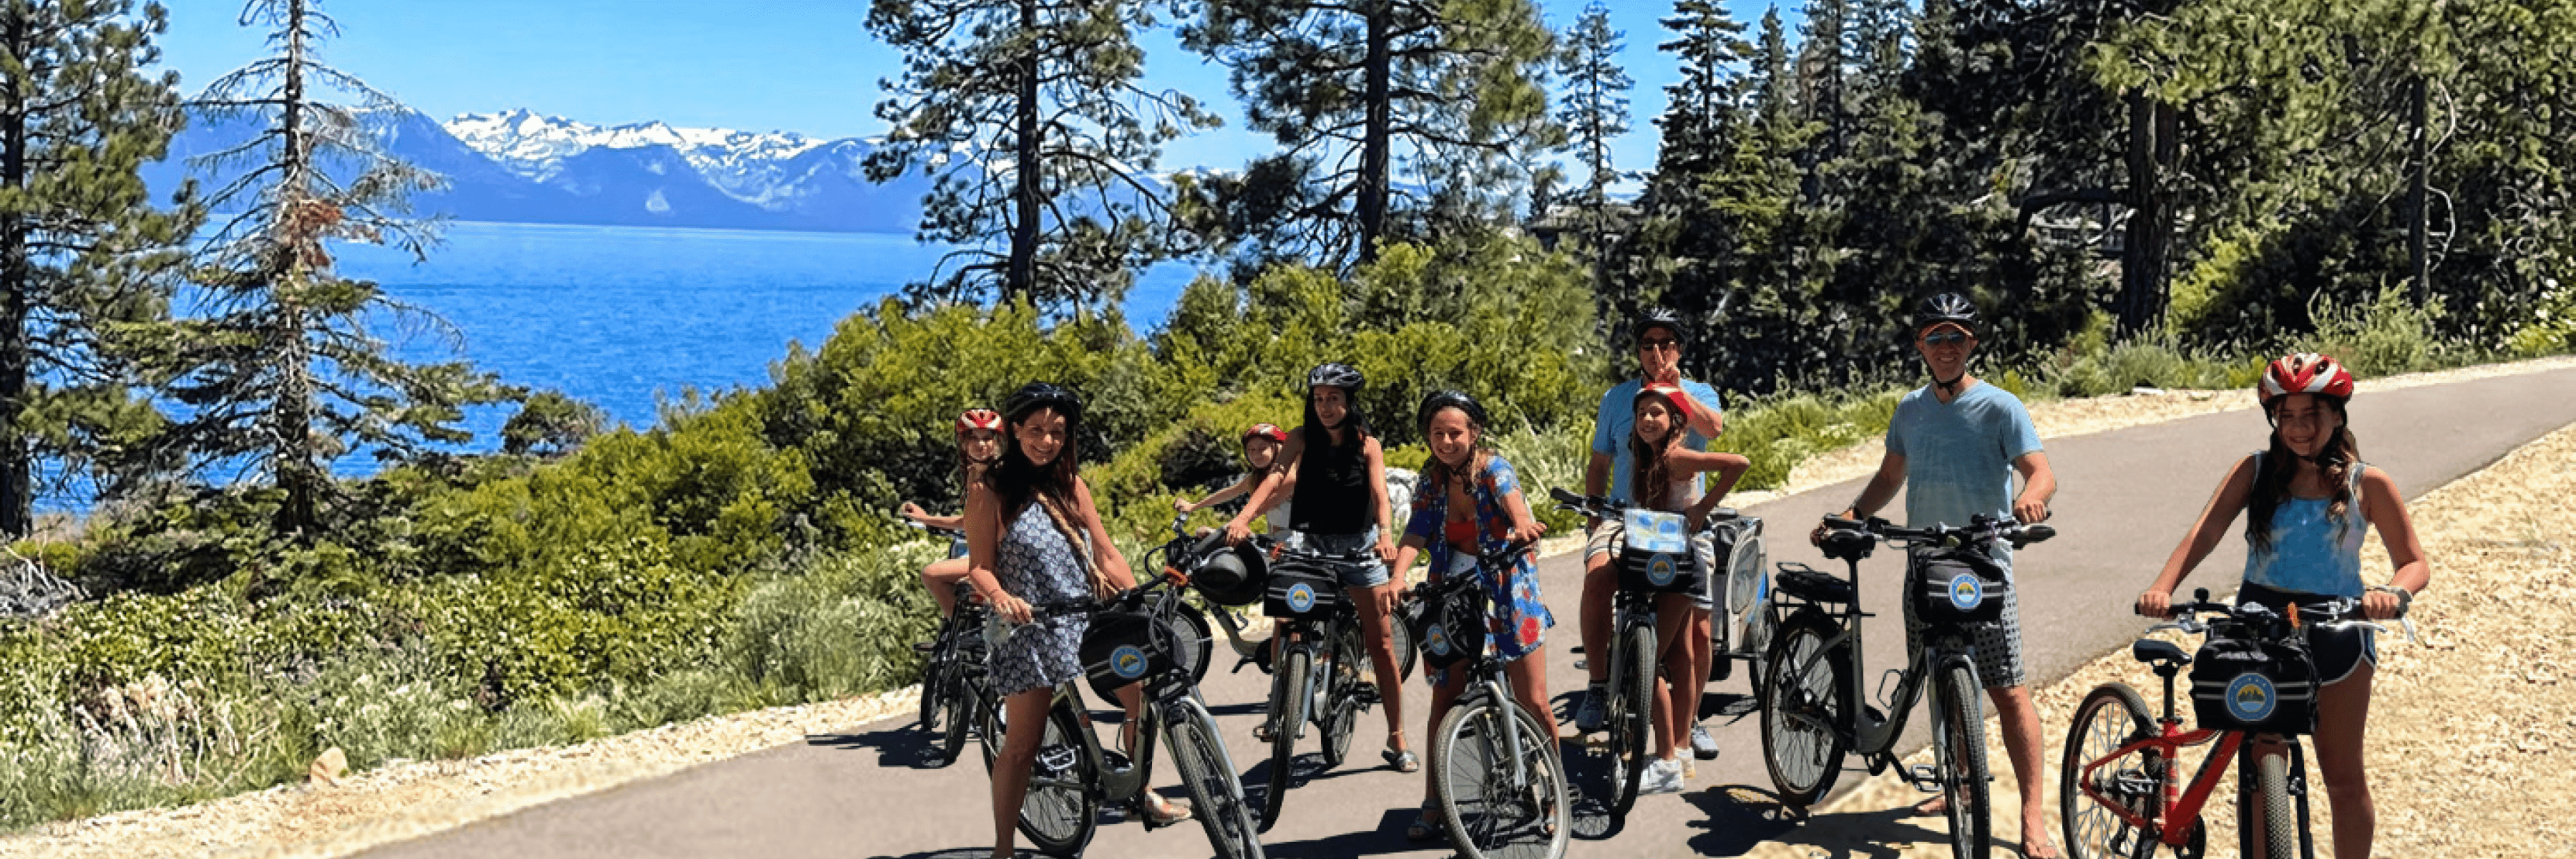 Group biking in Lake Tahoe